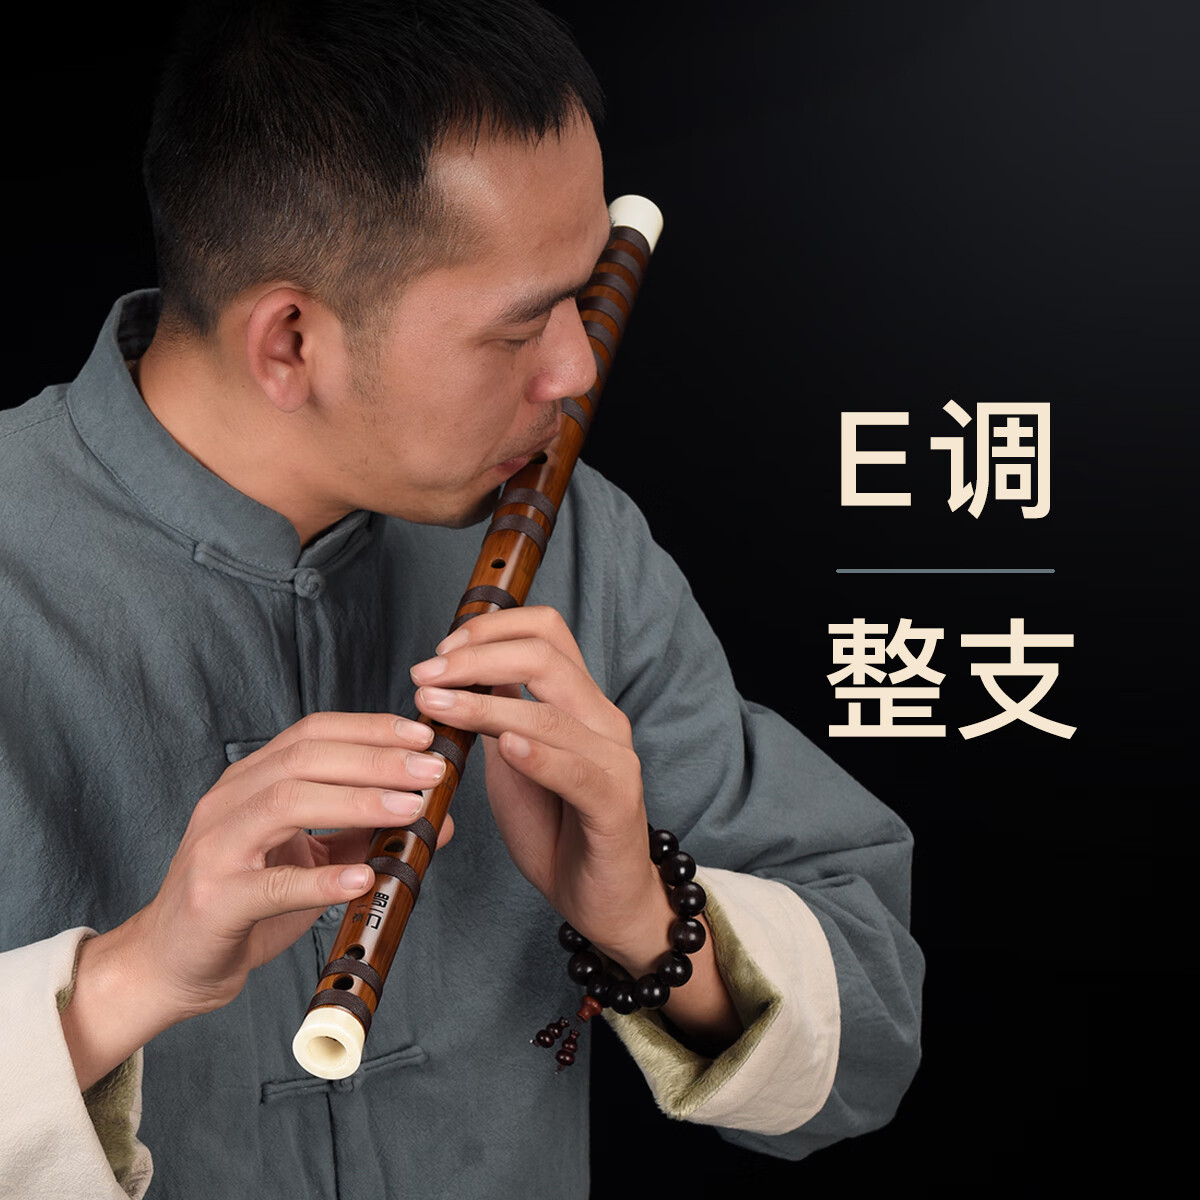 罗一刀一修款高级笛子演奏竹笛专业乐队横笛长笛初学入门笛子初学者乐器 E调 整支